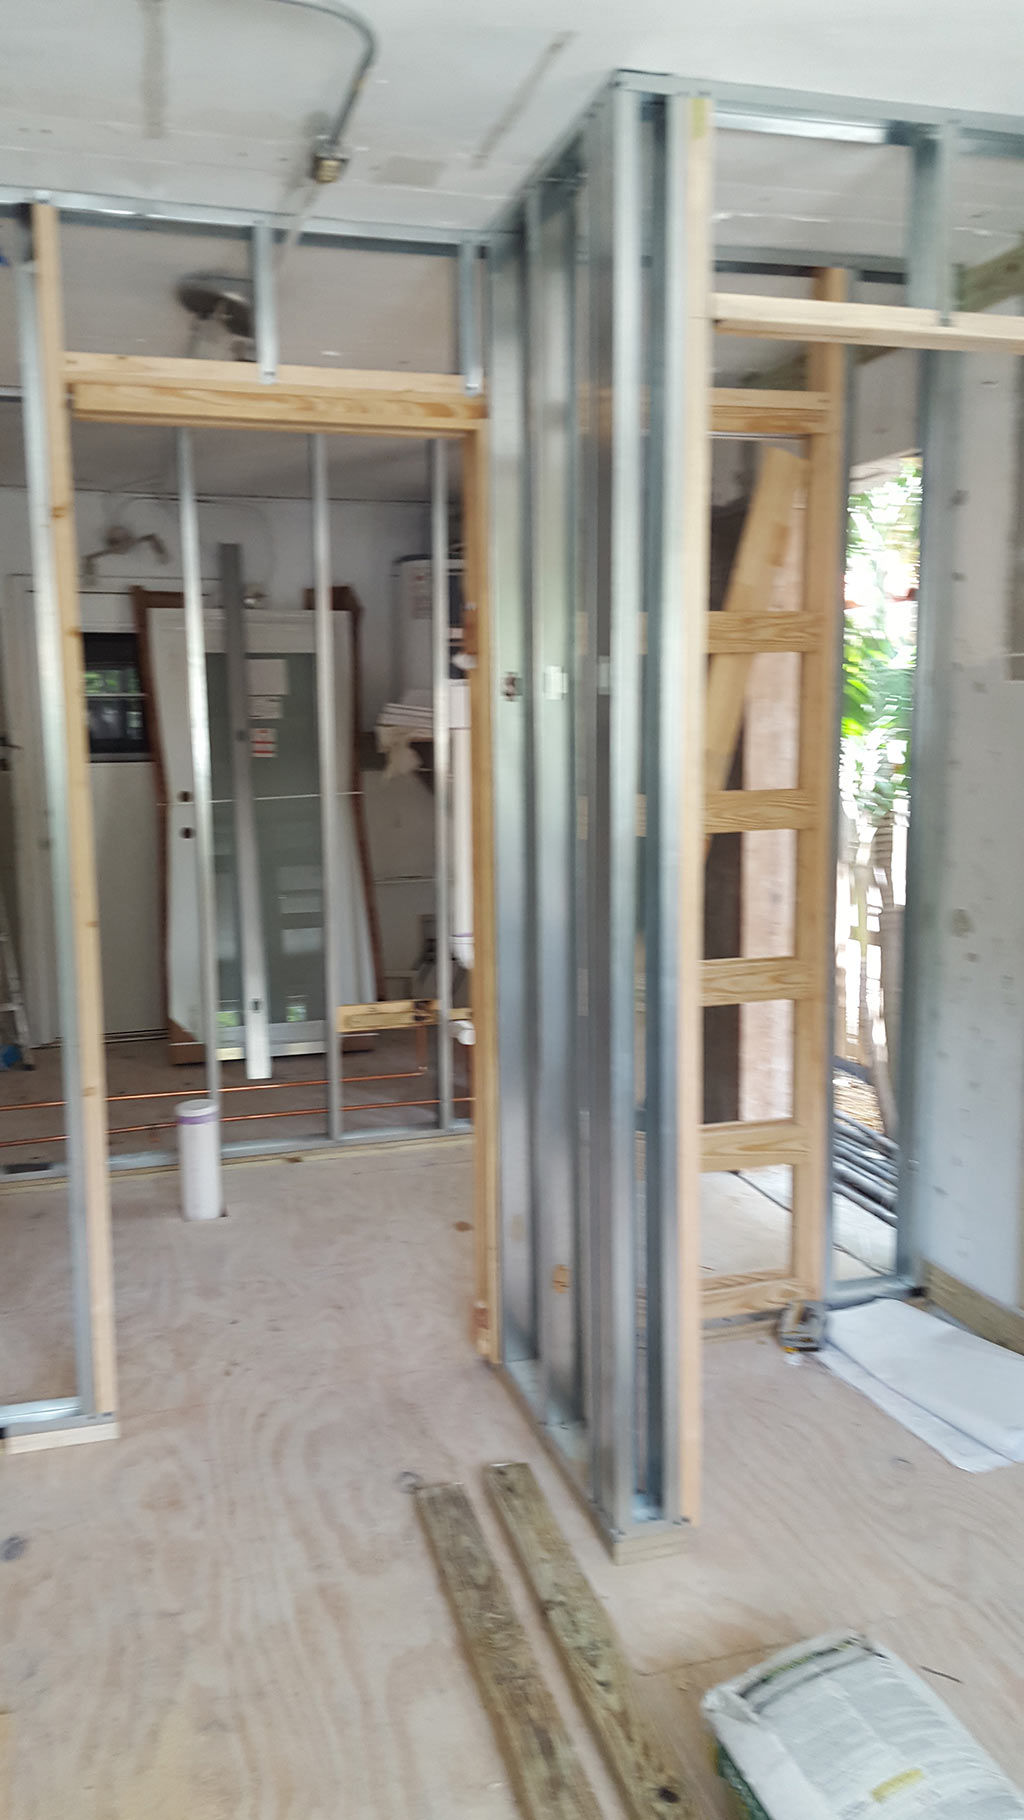 Interior partition framing for bathroom & closet